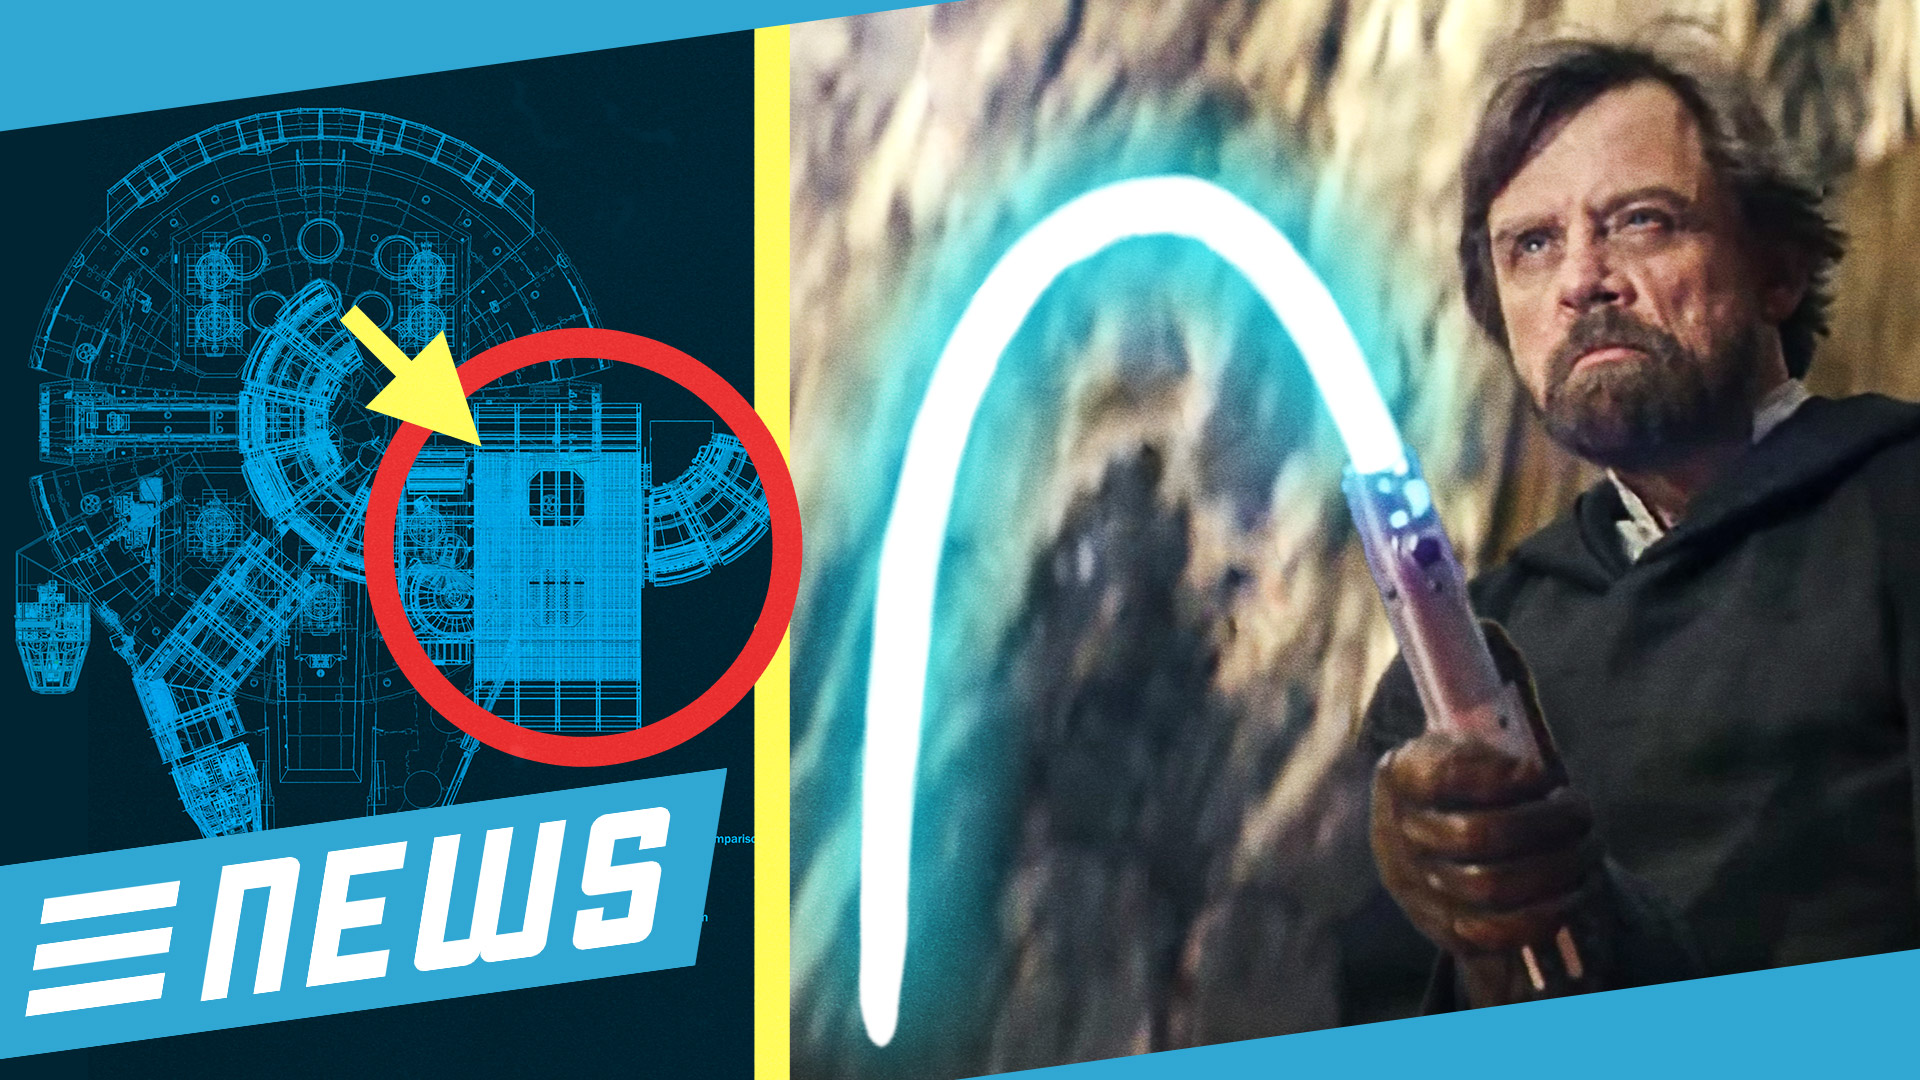 Star Wars 8 floppt und Millennium Falcon fällt durch? - FLIPPS News vom 28.01.2018